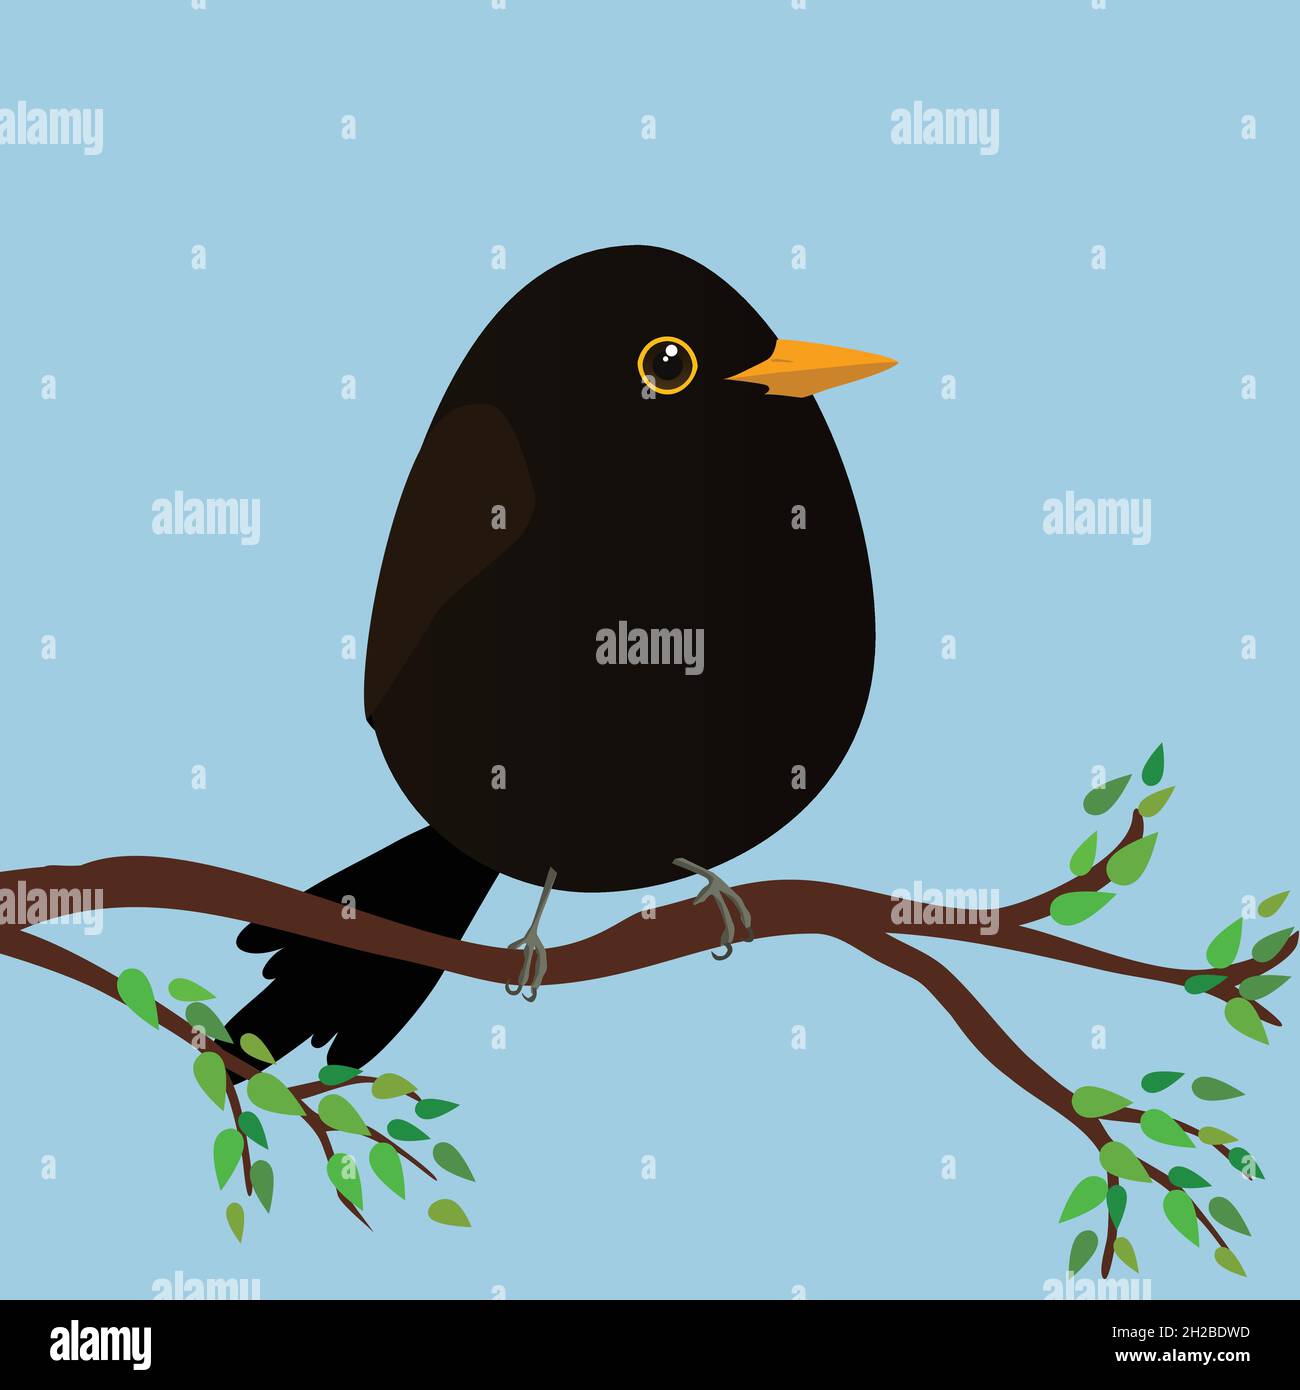 Un uccello nero molto carino a forma di uovo. Sfondo blu. L'uccello siede su un ramo con foglie verdi. Illustrazione Vettoriale